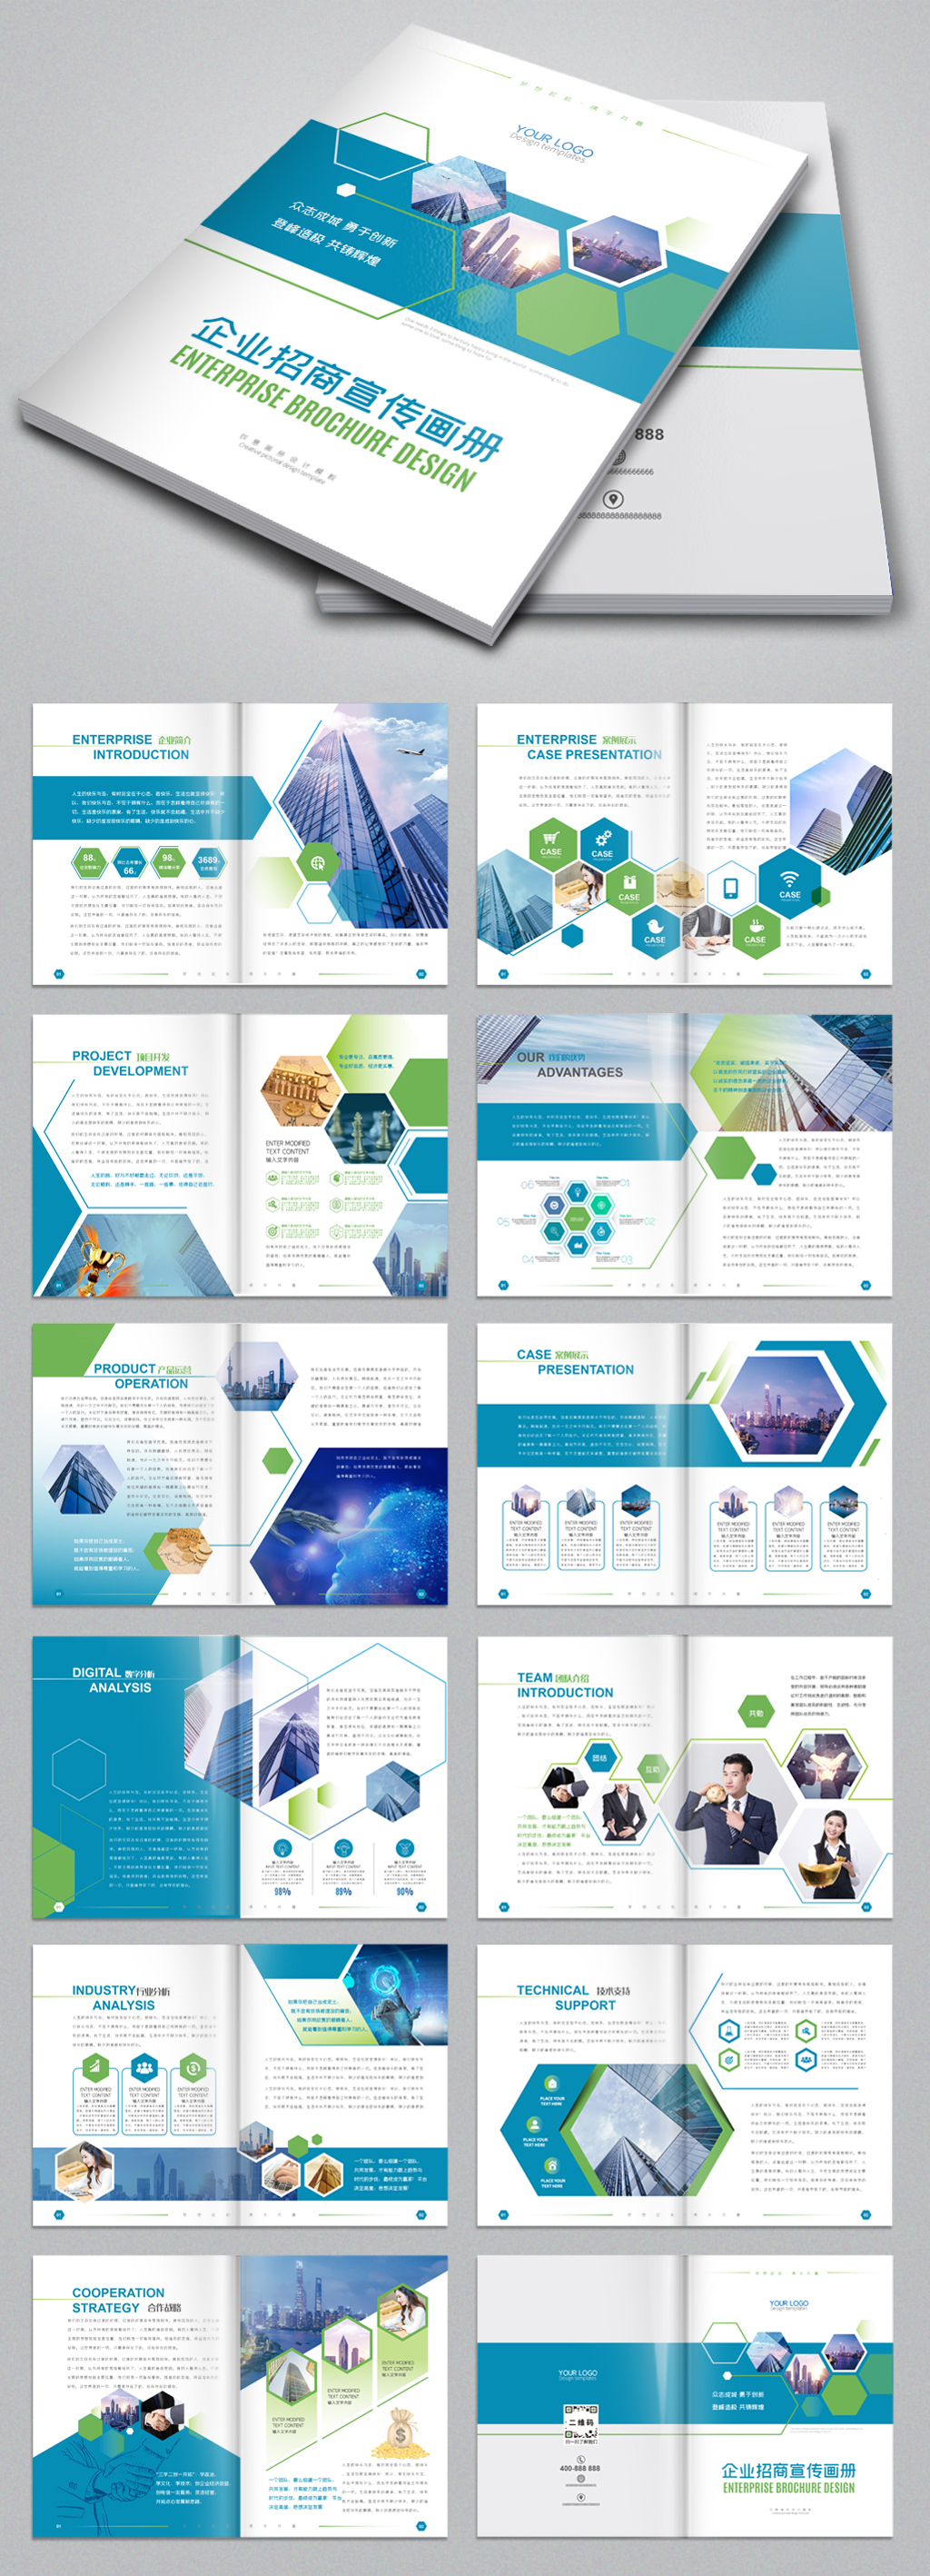 原创蓝色科技图册公司宣传册企业画册设计模板-版权可商用